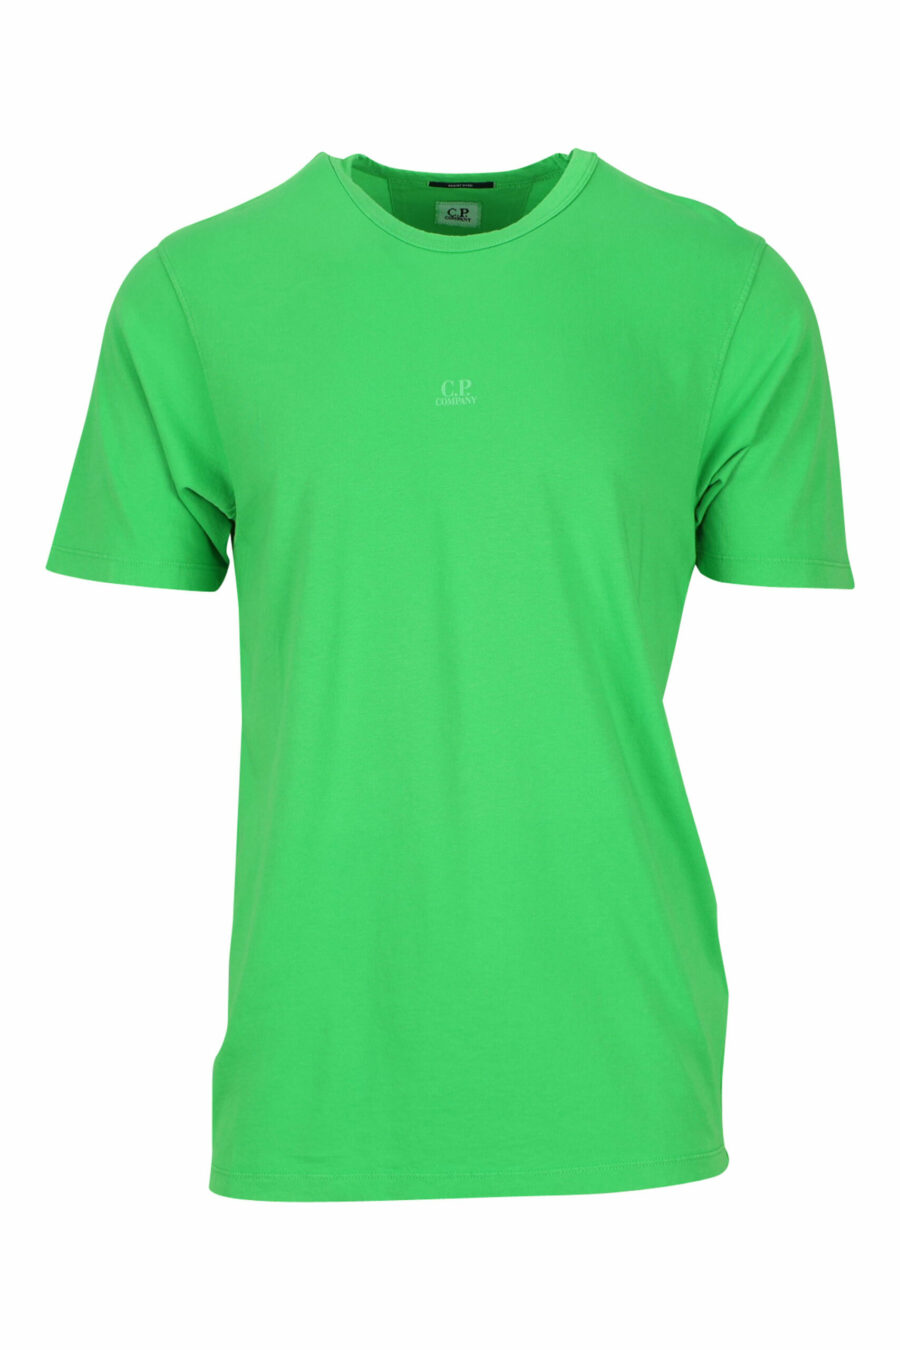 Camiseta verde con minilogo centrado - 7620943594997 scaled